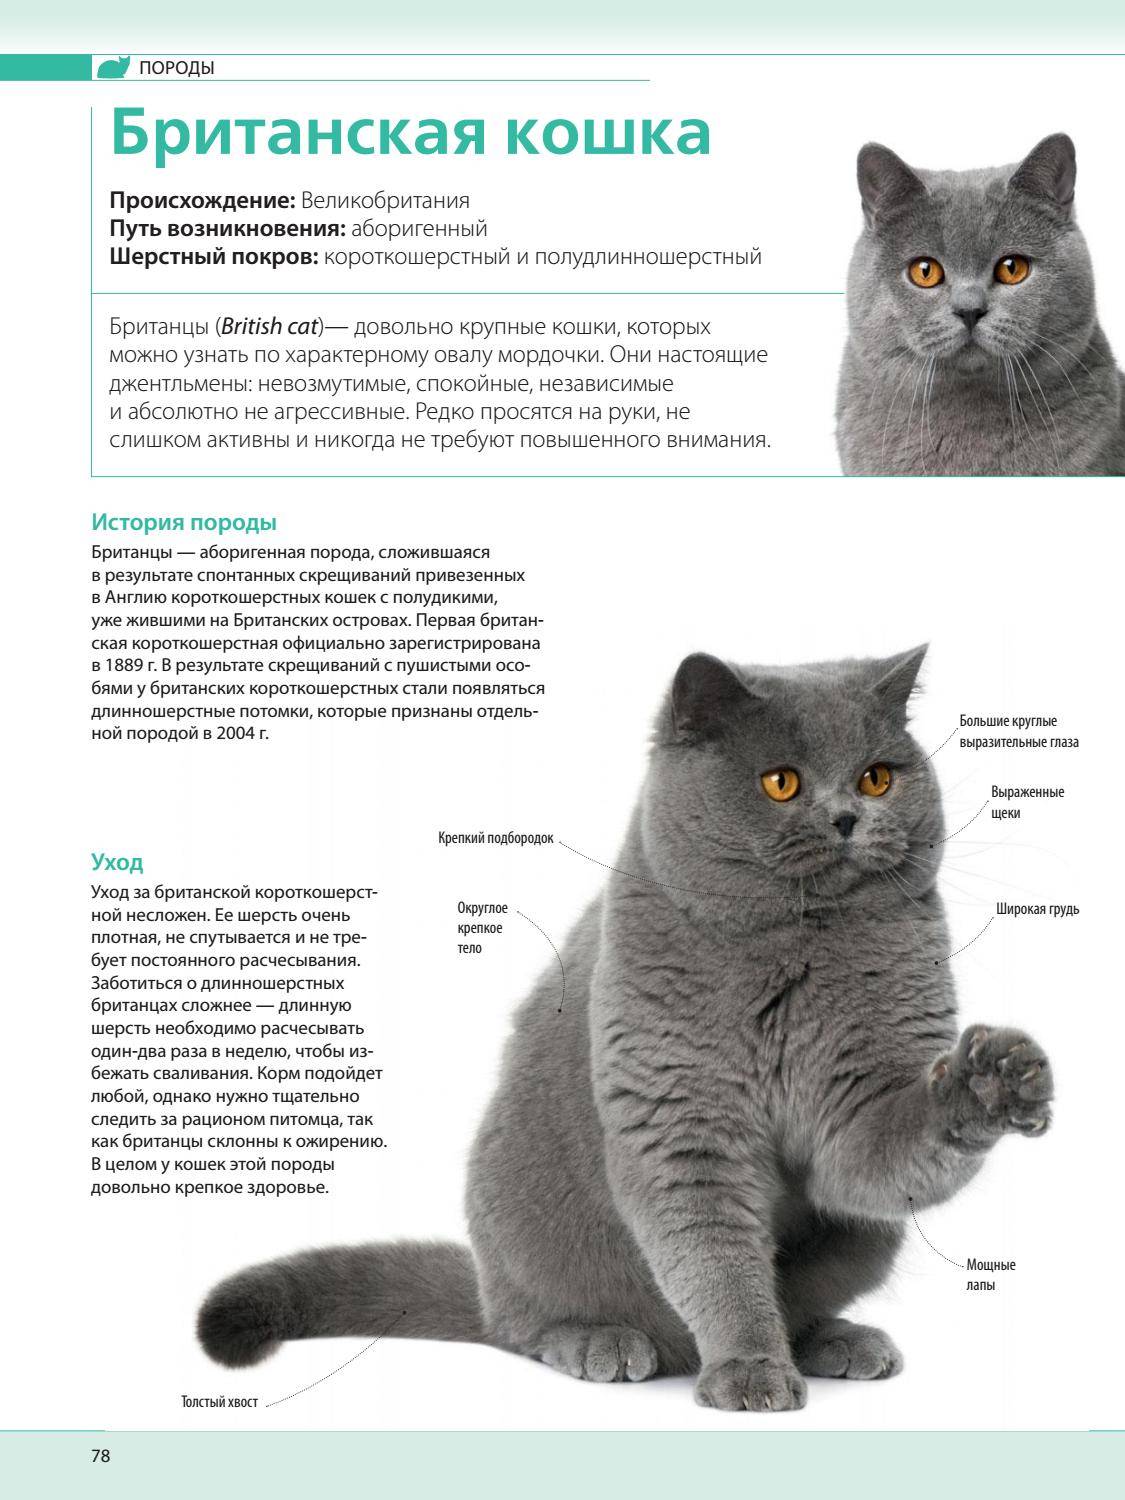 Вислоухая британская кошка, описание породы и характера